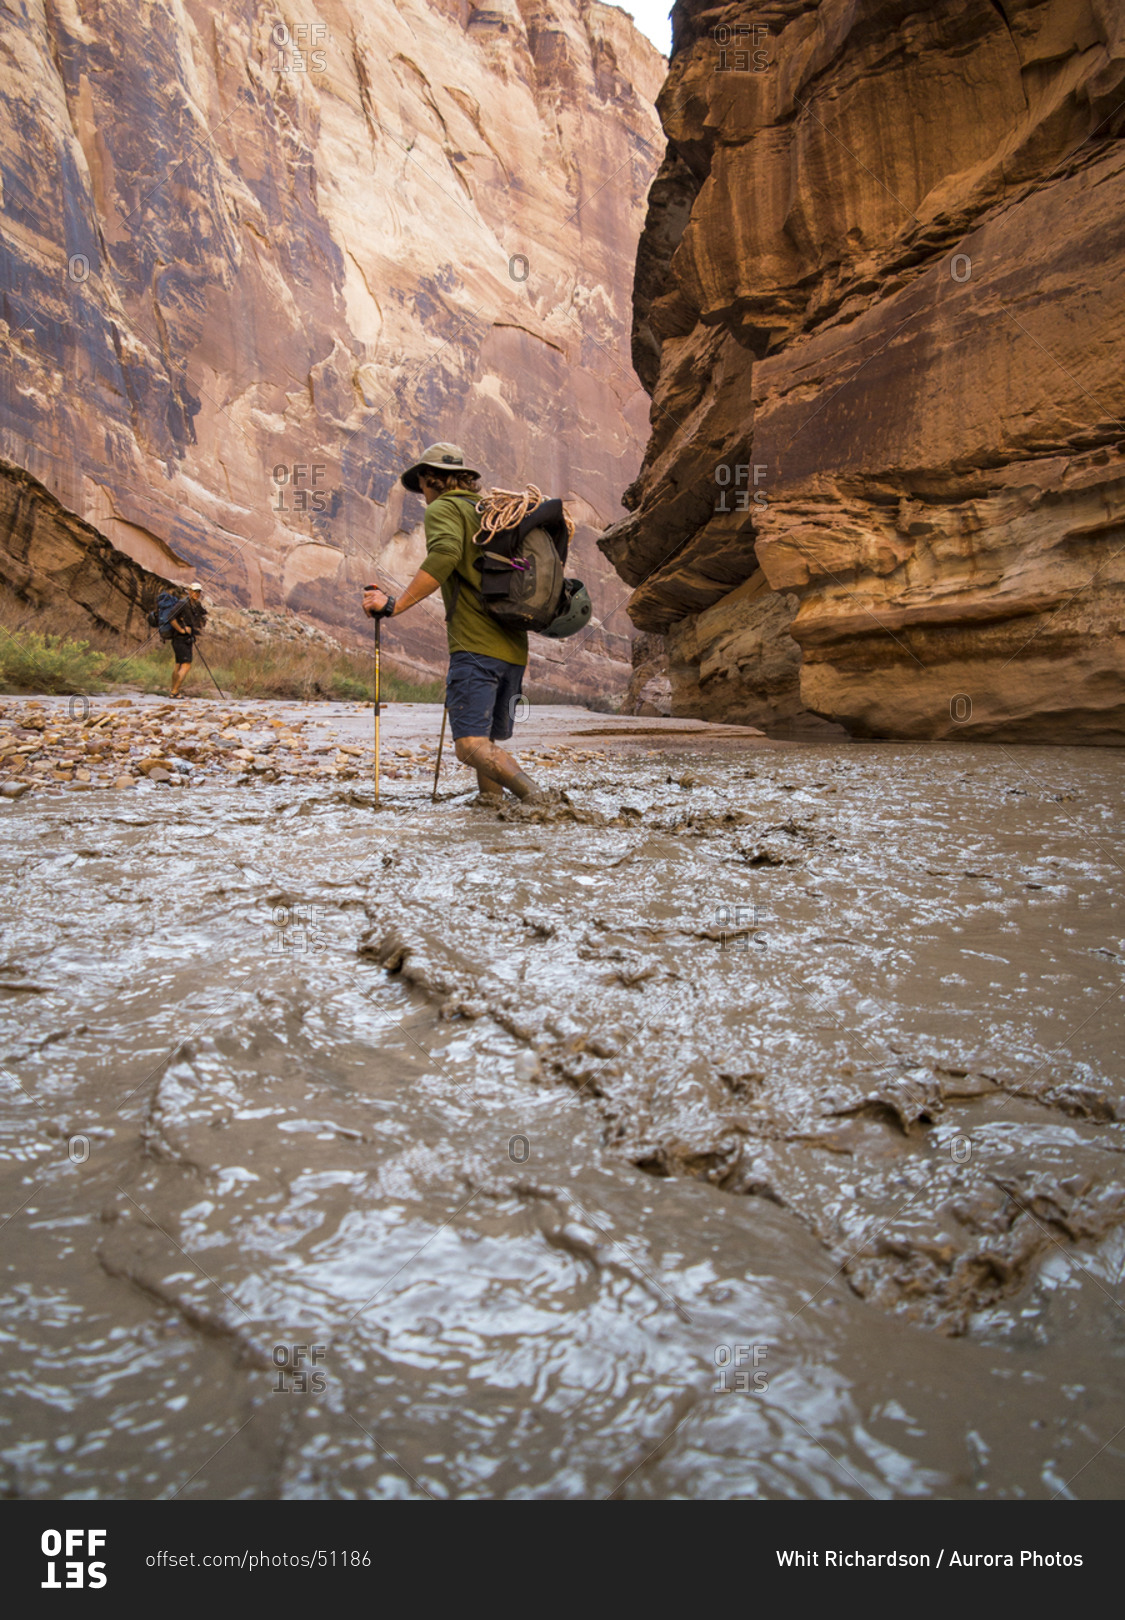 A man hiking through a muddy creek in a canyon.